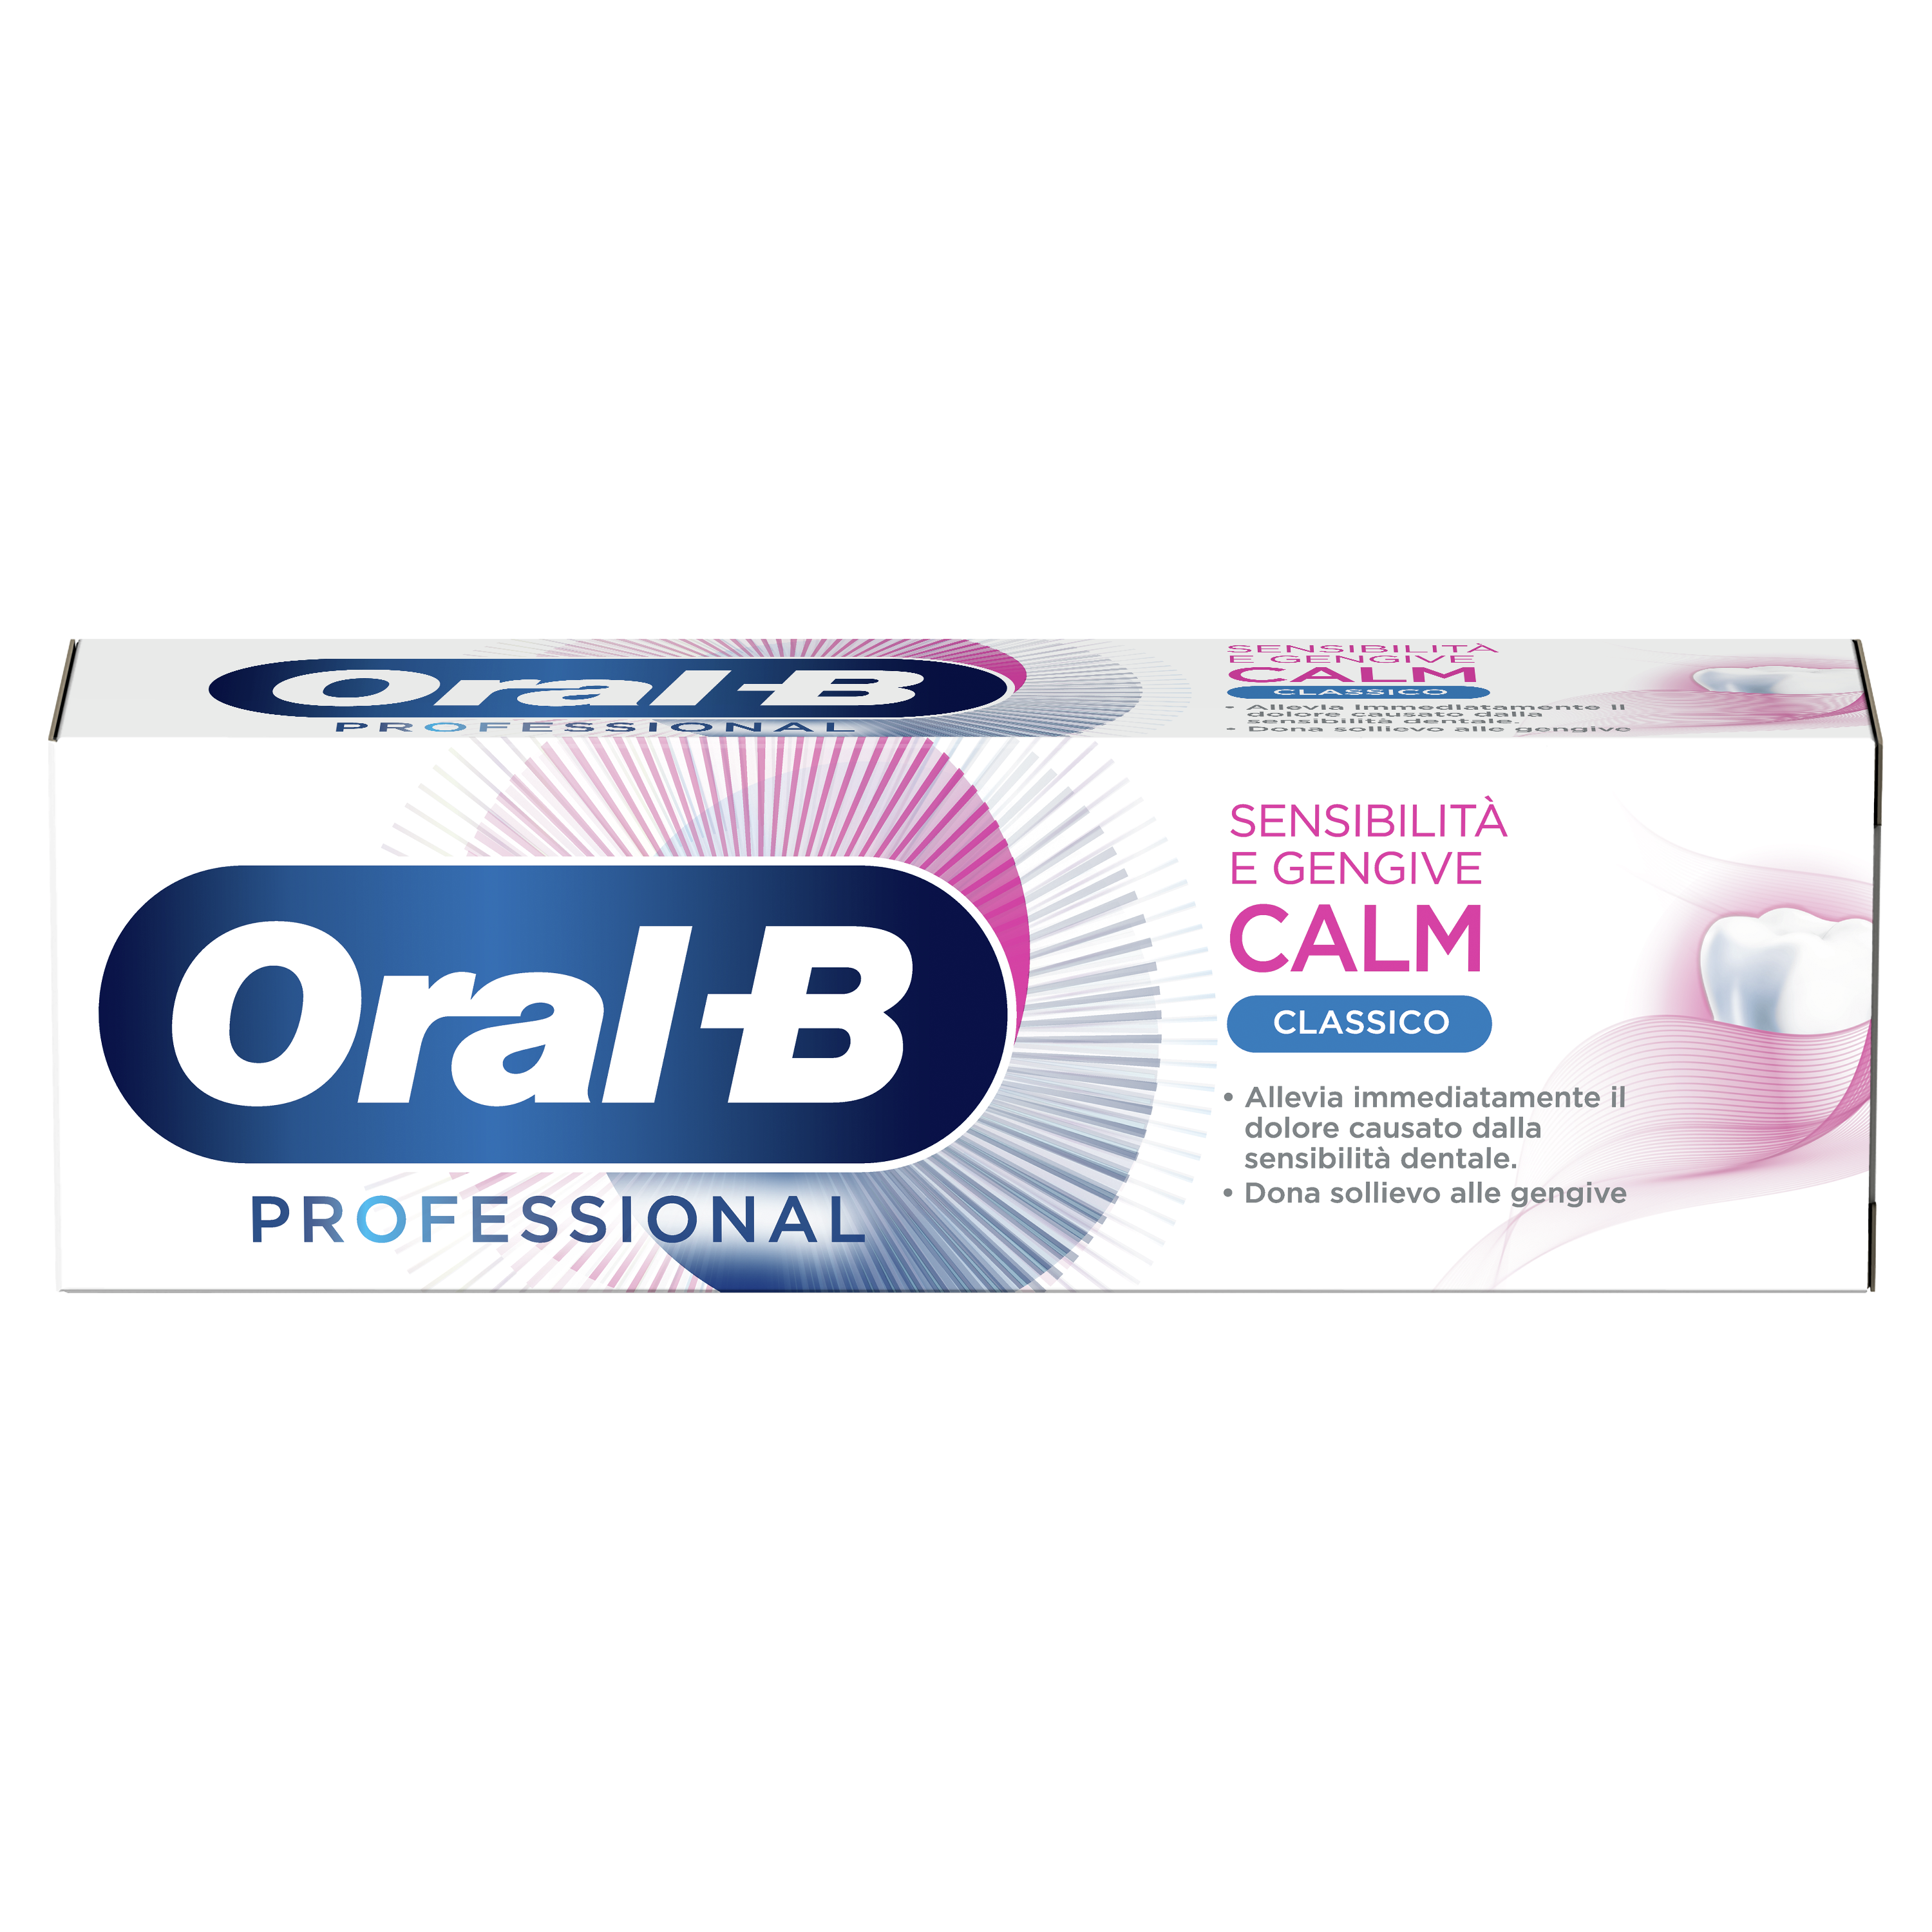 Oral-B Dentifricio Professional Sensibilità e Gengive Calm Classico undefined